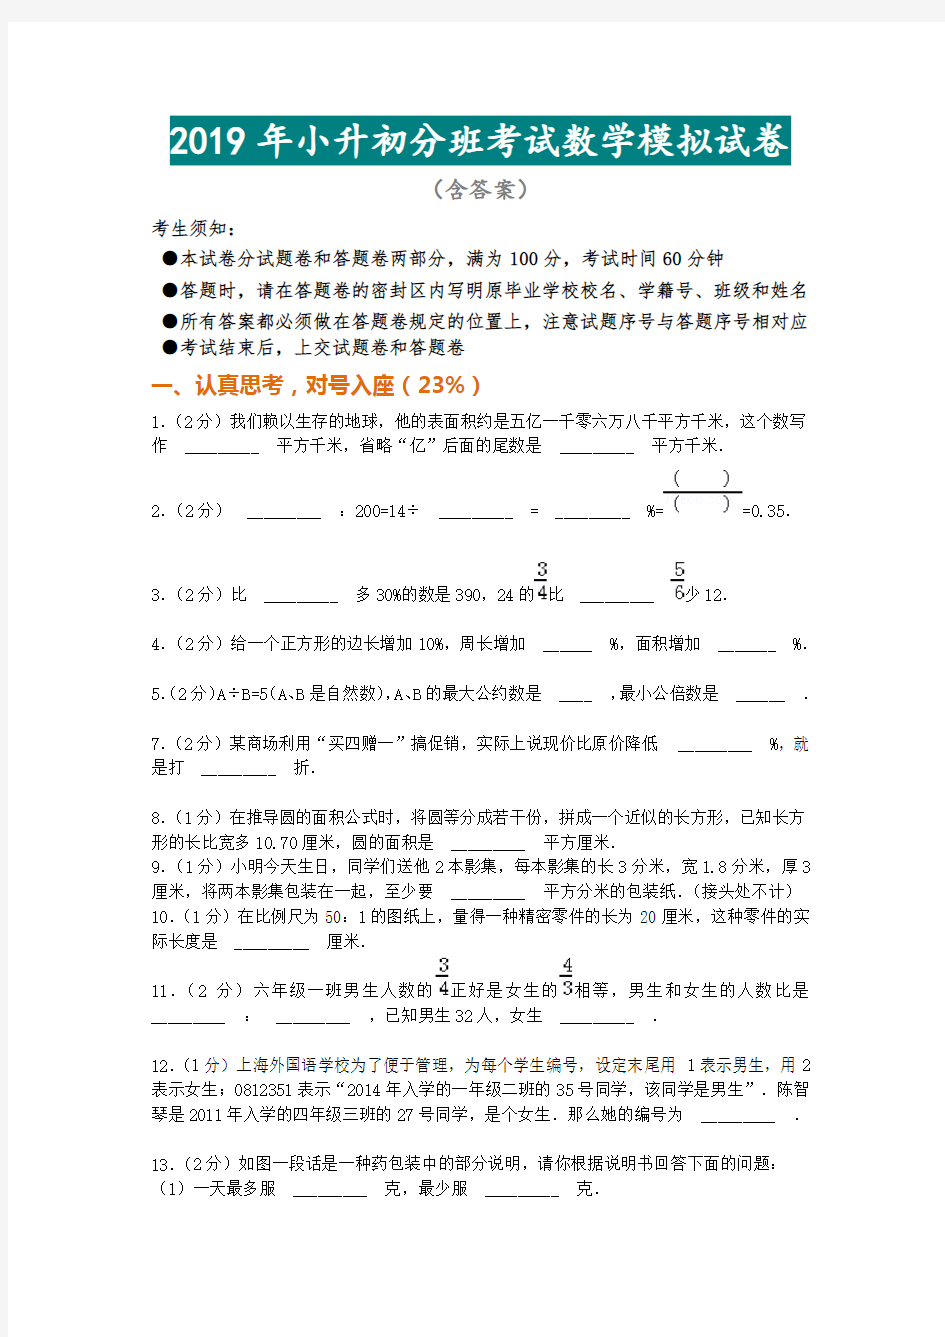 2019年小升初分班考试数学模拟试卷(附答案讲解)